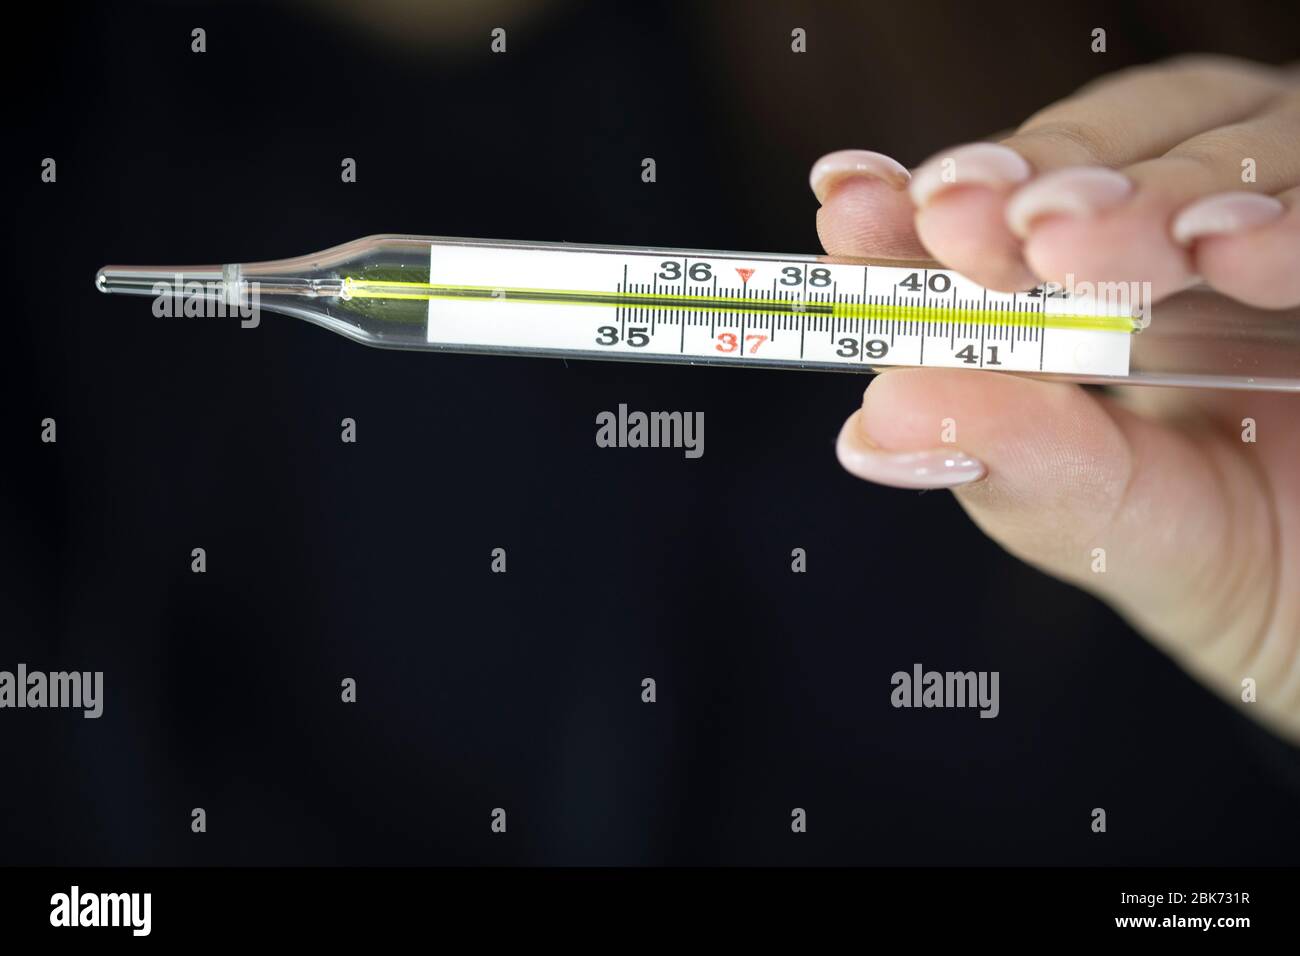 La femmina tiene in mano un termometro a mercurio che mostra 38,5 gradi,  febbre alta Foto stock - Alamy